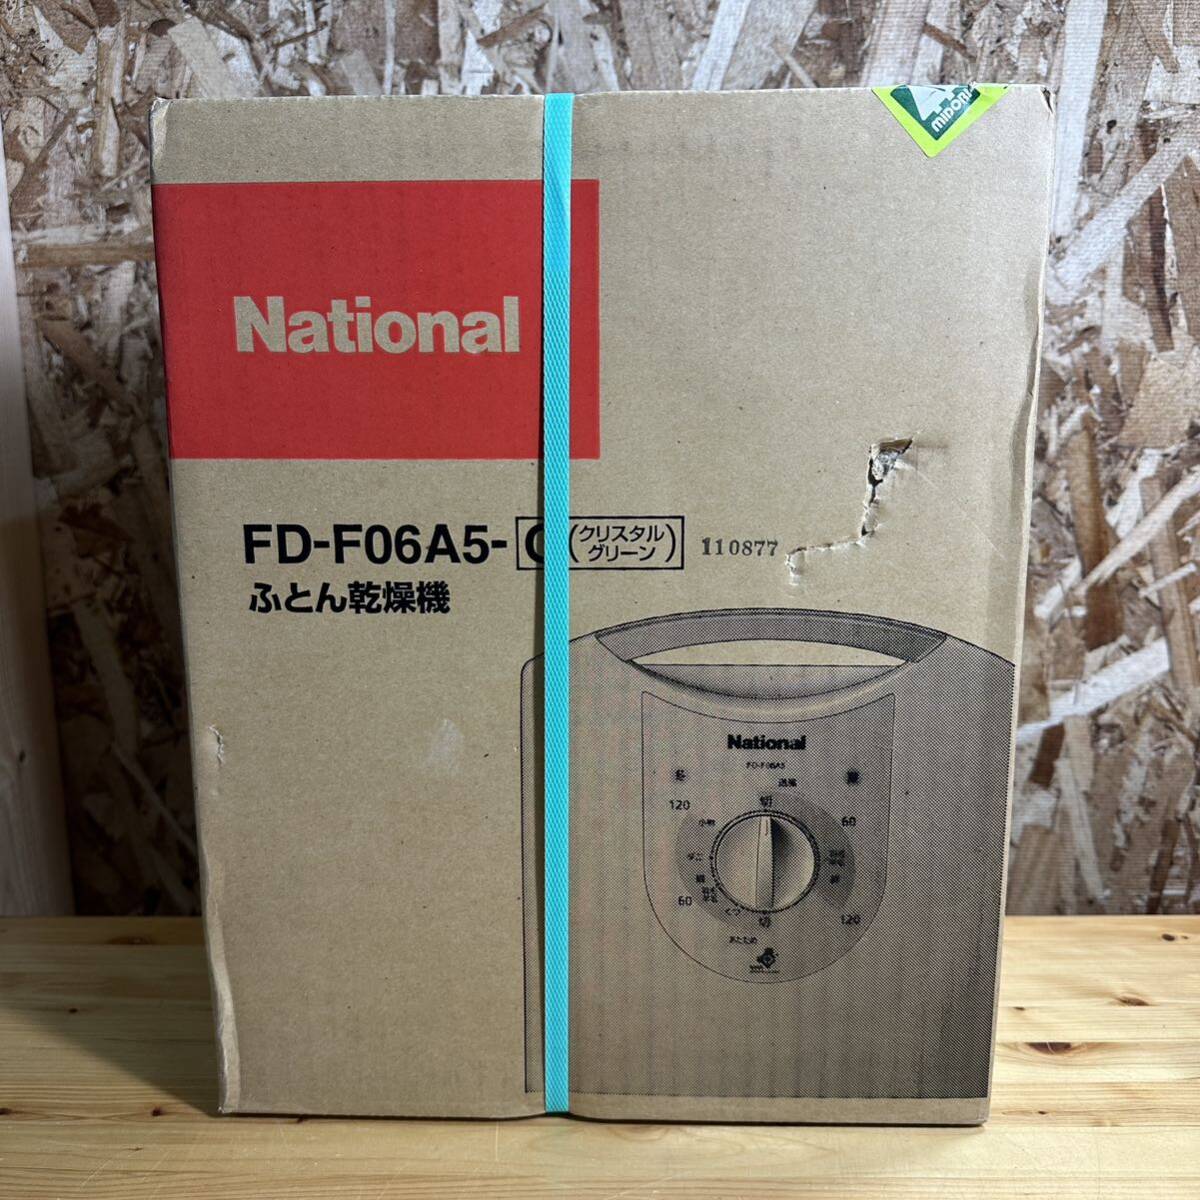 National ナショナル ふとん乾燥機 FD-F06A5-G 小物 靴 乾燥OK 家電 電化製品 インテリア 未使用品の画像4